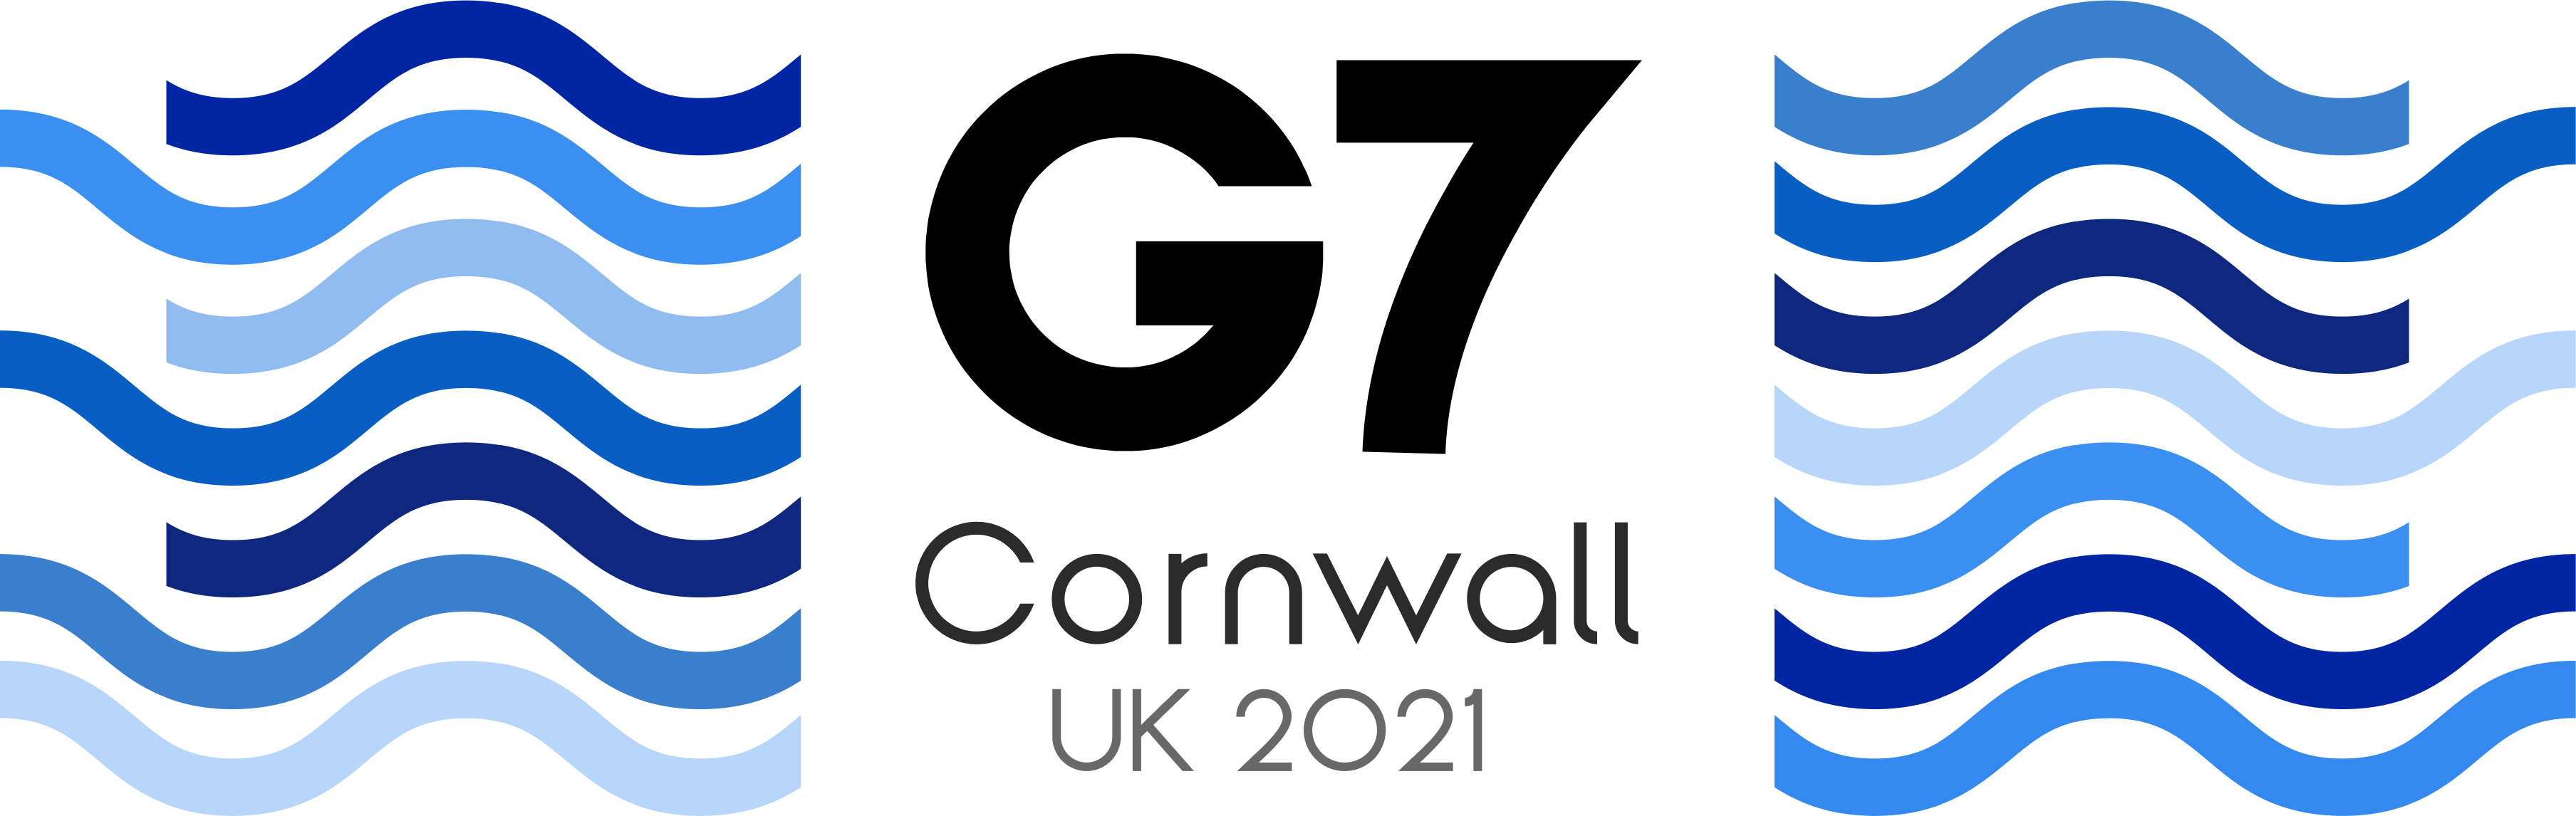 Déclarations du G7 sur la santé, juin 2021 